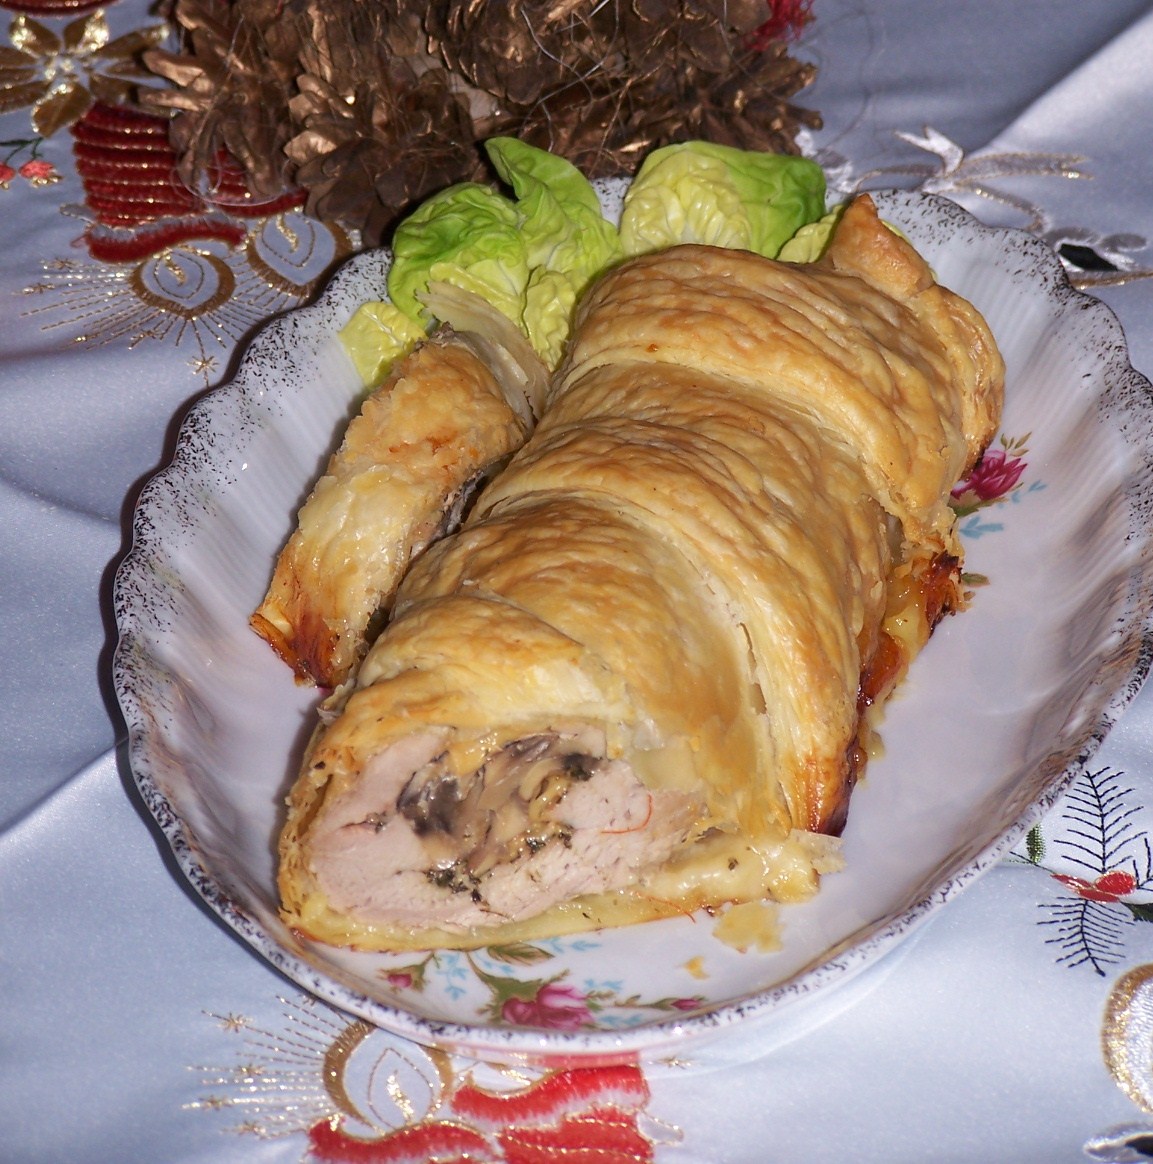 W Nowy Rok też trzeba jeść, czyli propozycje mięsnego obiadu Noworocznego :)